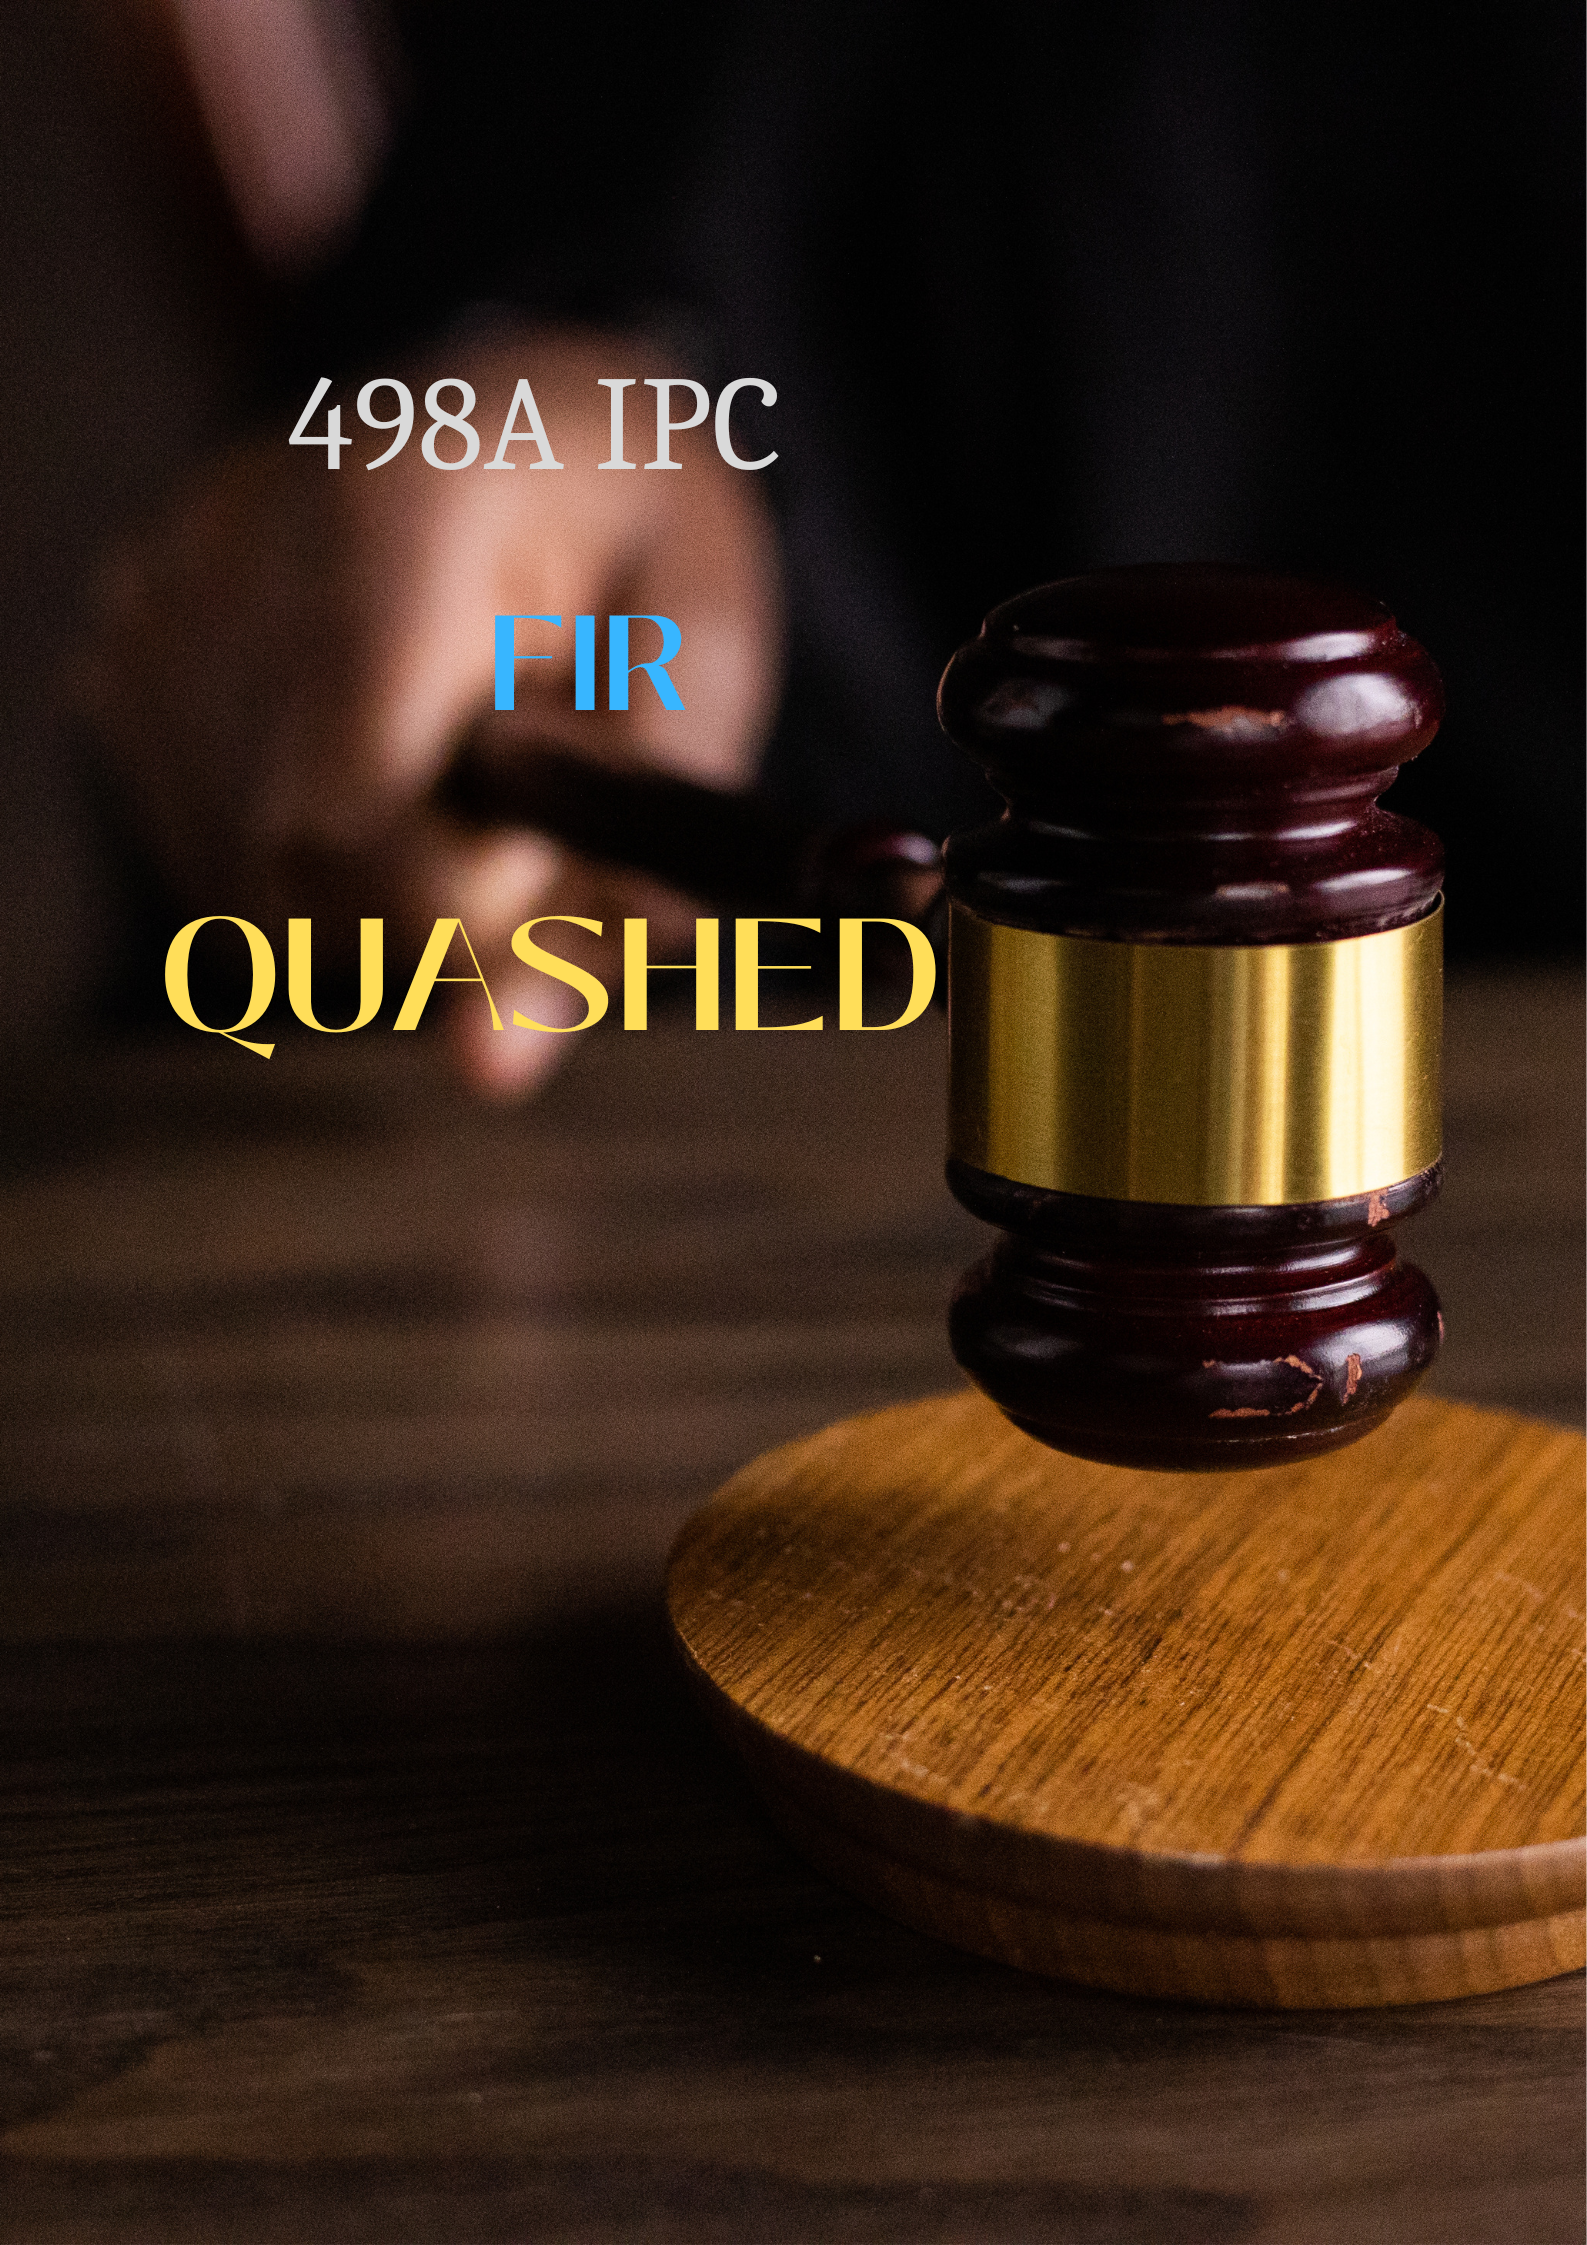 Lawyer for Quashing of Dowry Case FIR /498A IPC FIR case